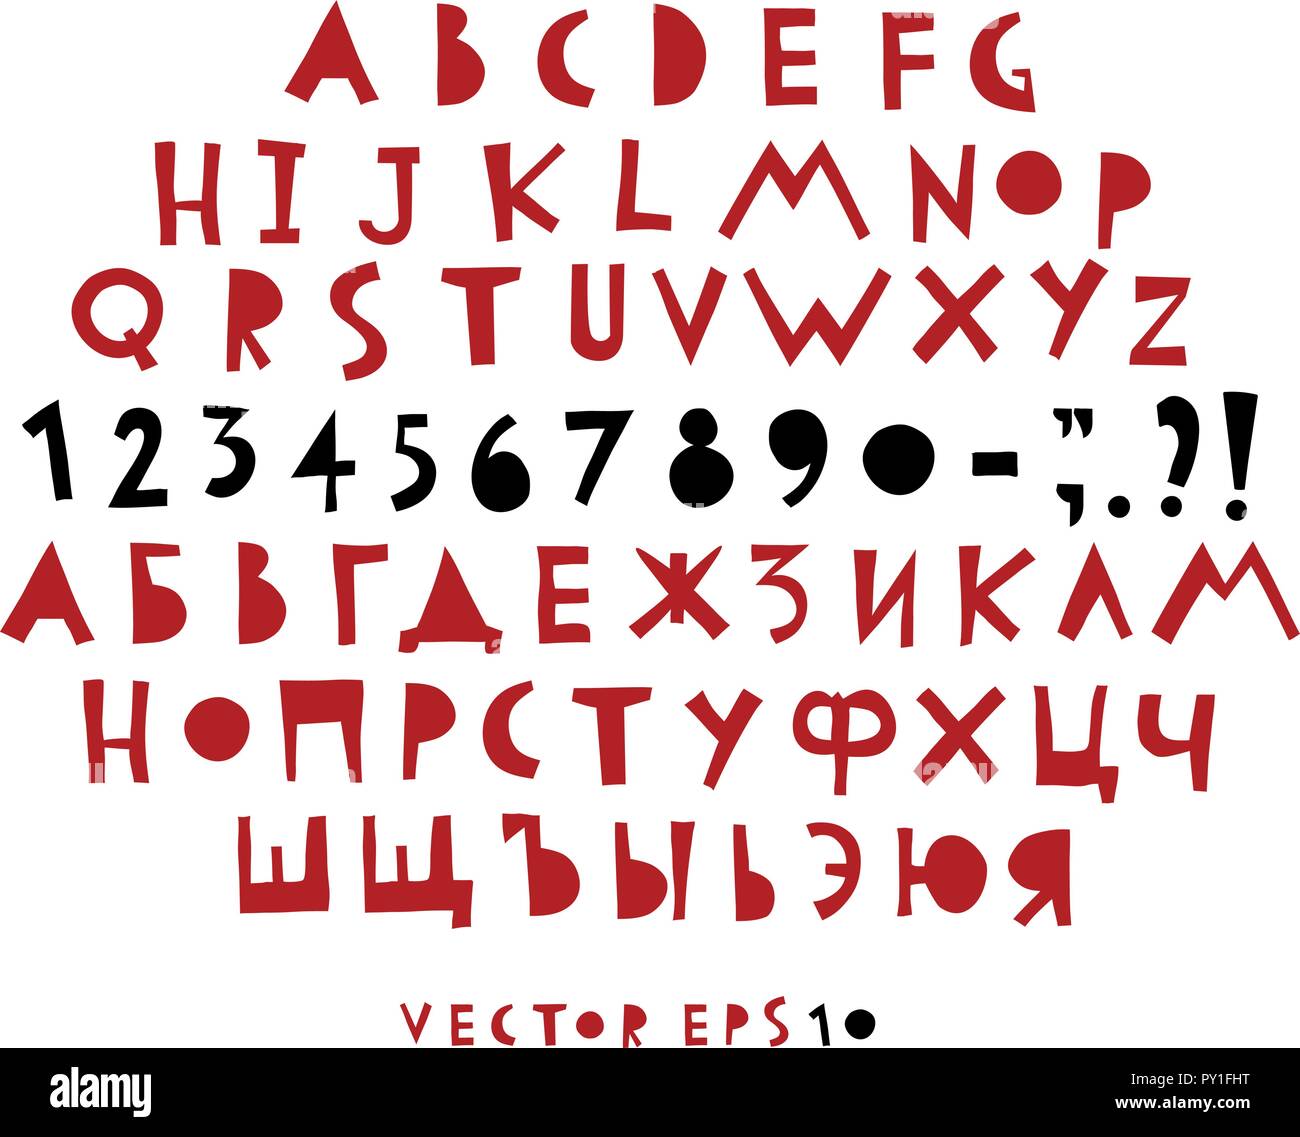 Vektor hand lustig Alphabet gezeichnet. Hand kyrillisch gezeichnet, lateinische Buchstaben und Zahlen. Stock Vektor